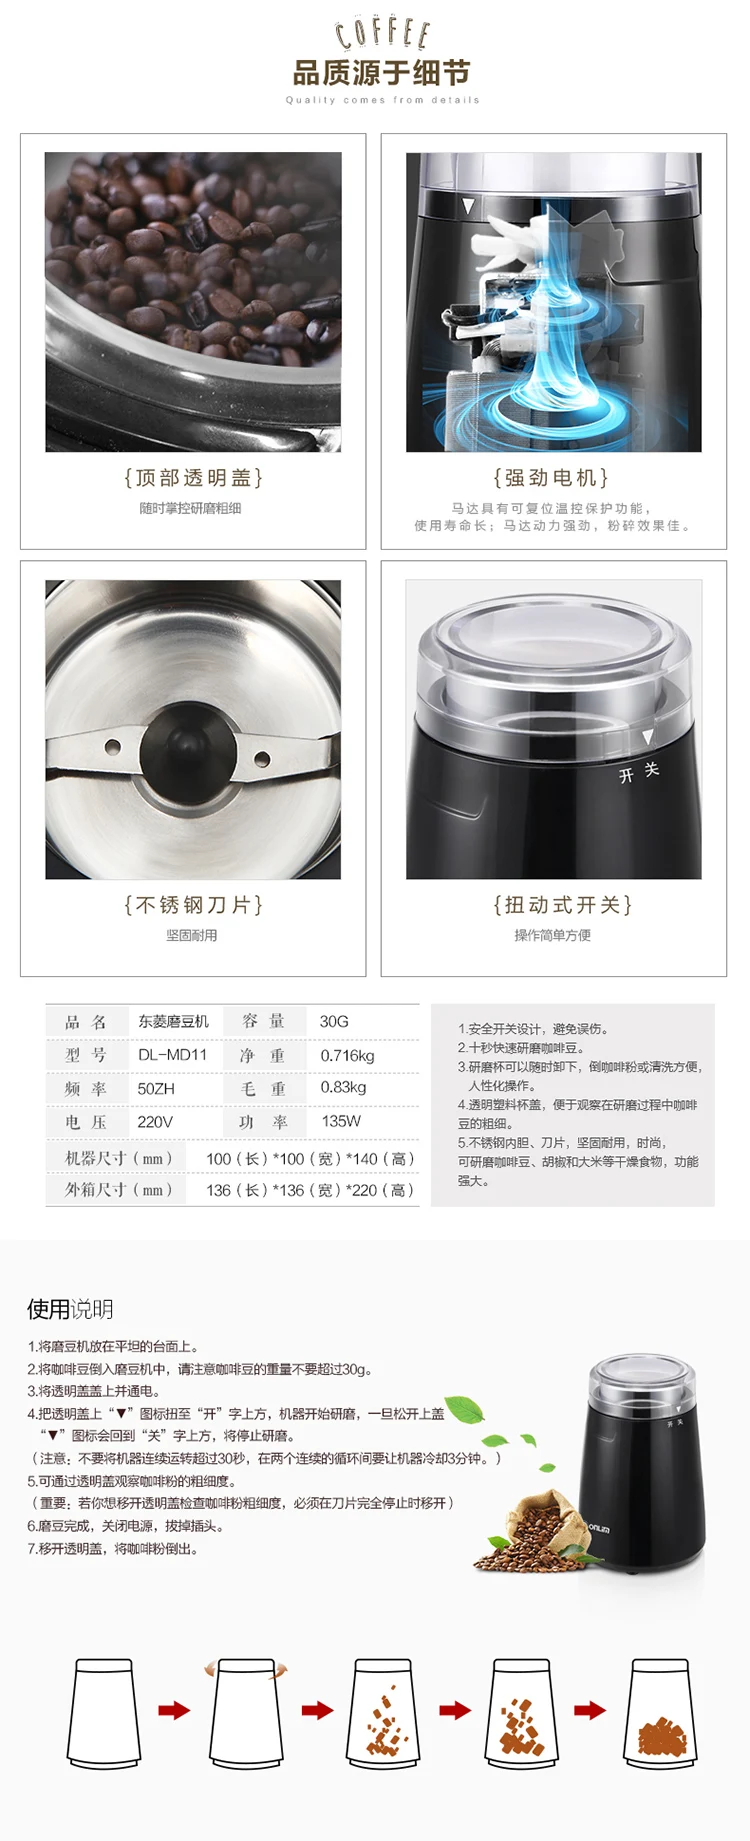 Китай(материк) Donlim DL-MD11 кофемолка шлифовальный станок Кофе Электрический Кофемолки кофемолка 220-230-240v